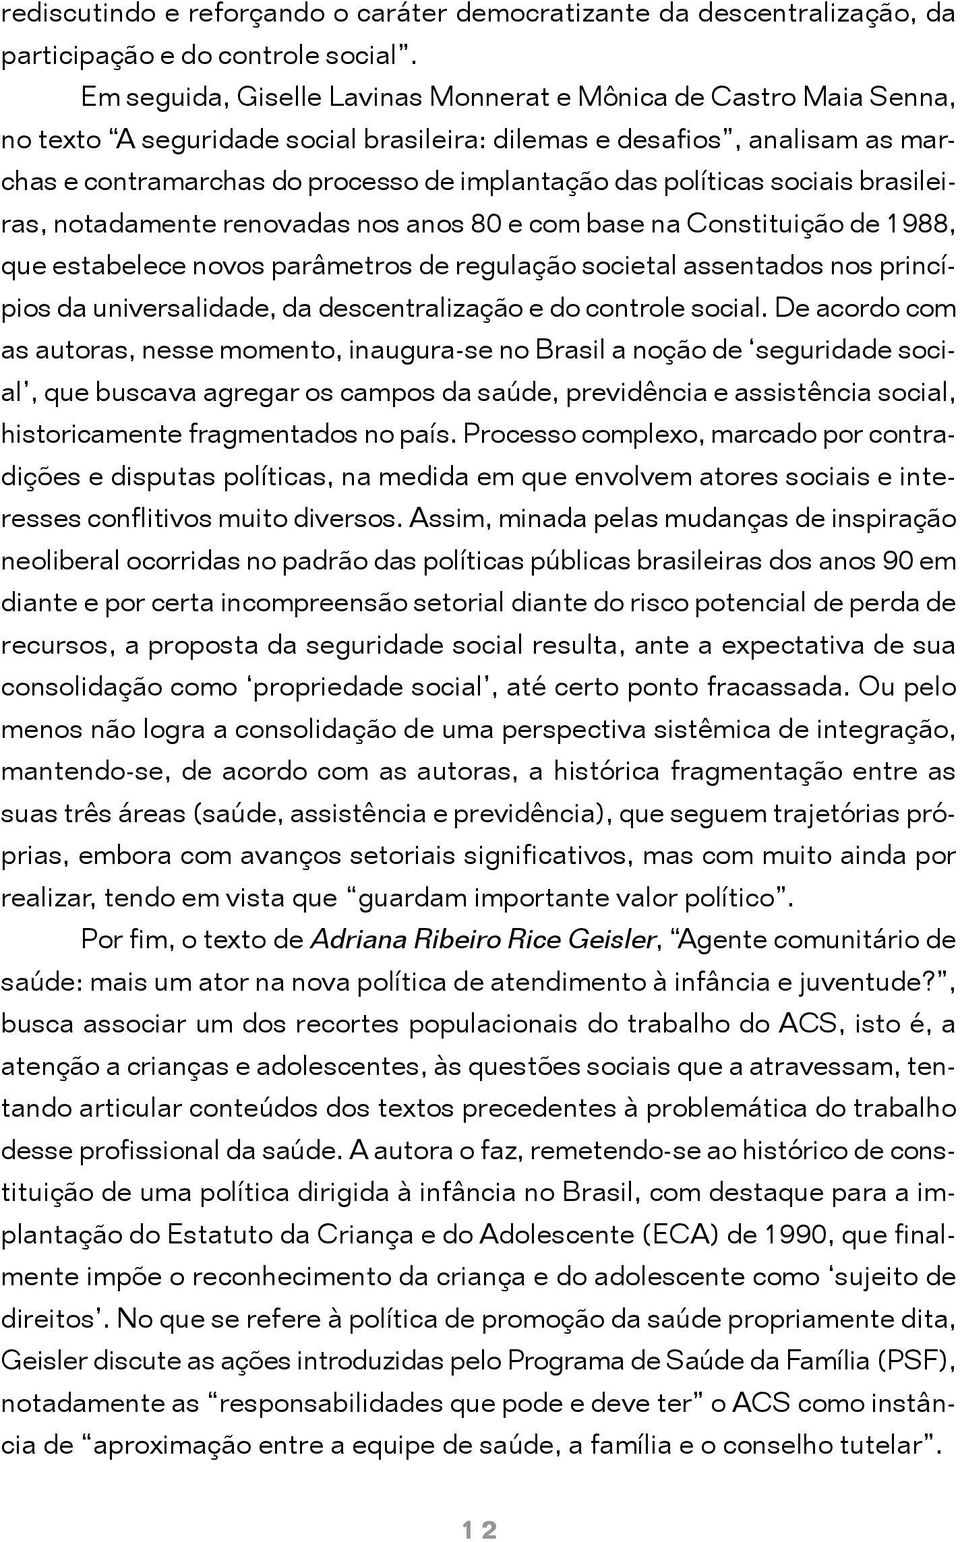 políticas sociais brasileiras, notadamente renovadas nos anos 80 e com base na Constituição de 1988, que estabelece novos parâmetros de regulação societal assentados nos princípios da universalidade,